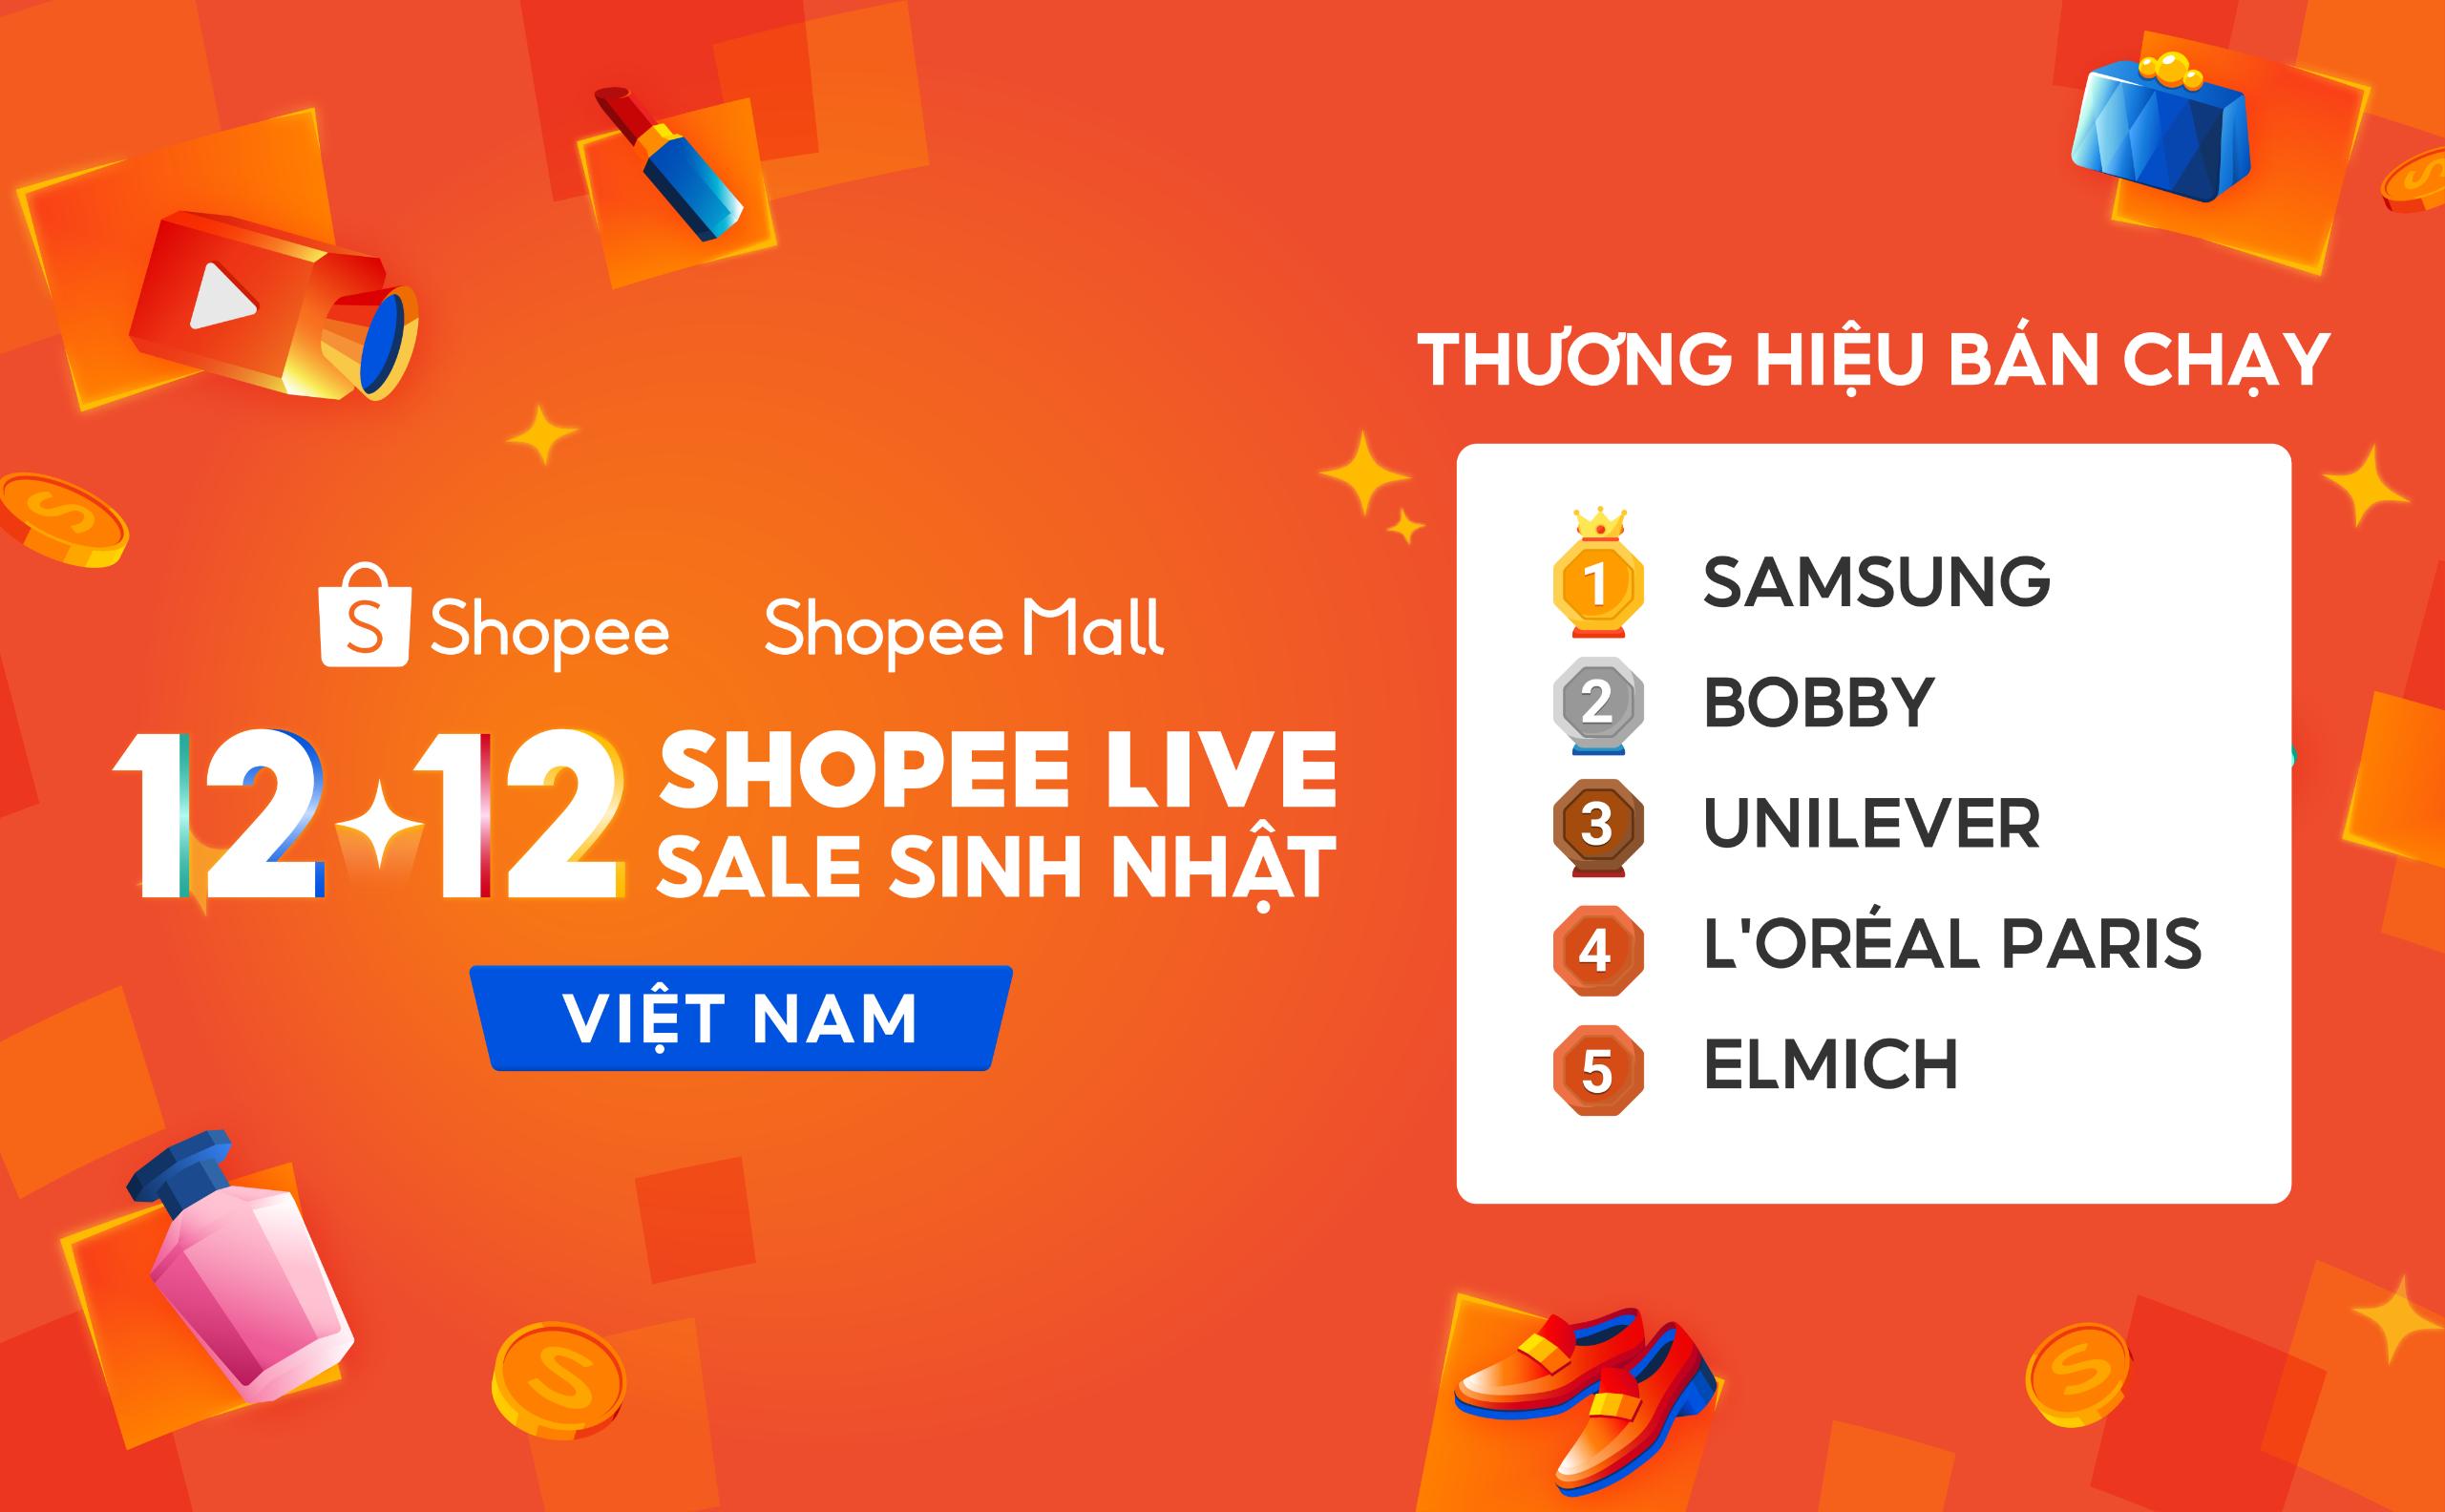 Top thuong hieu ban chay tren Shopee Mall trong su kien 12.12 Shopee lập kỷ lục số sản phẩm bán ra qua livestream tăng gấp 28 lần trong ngày 12.12